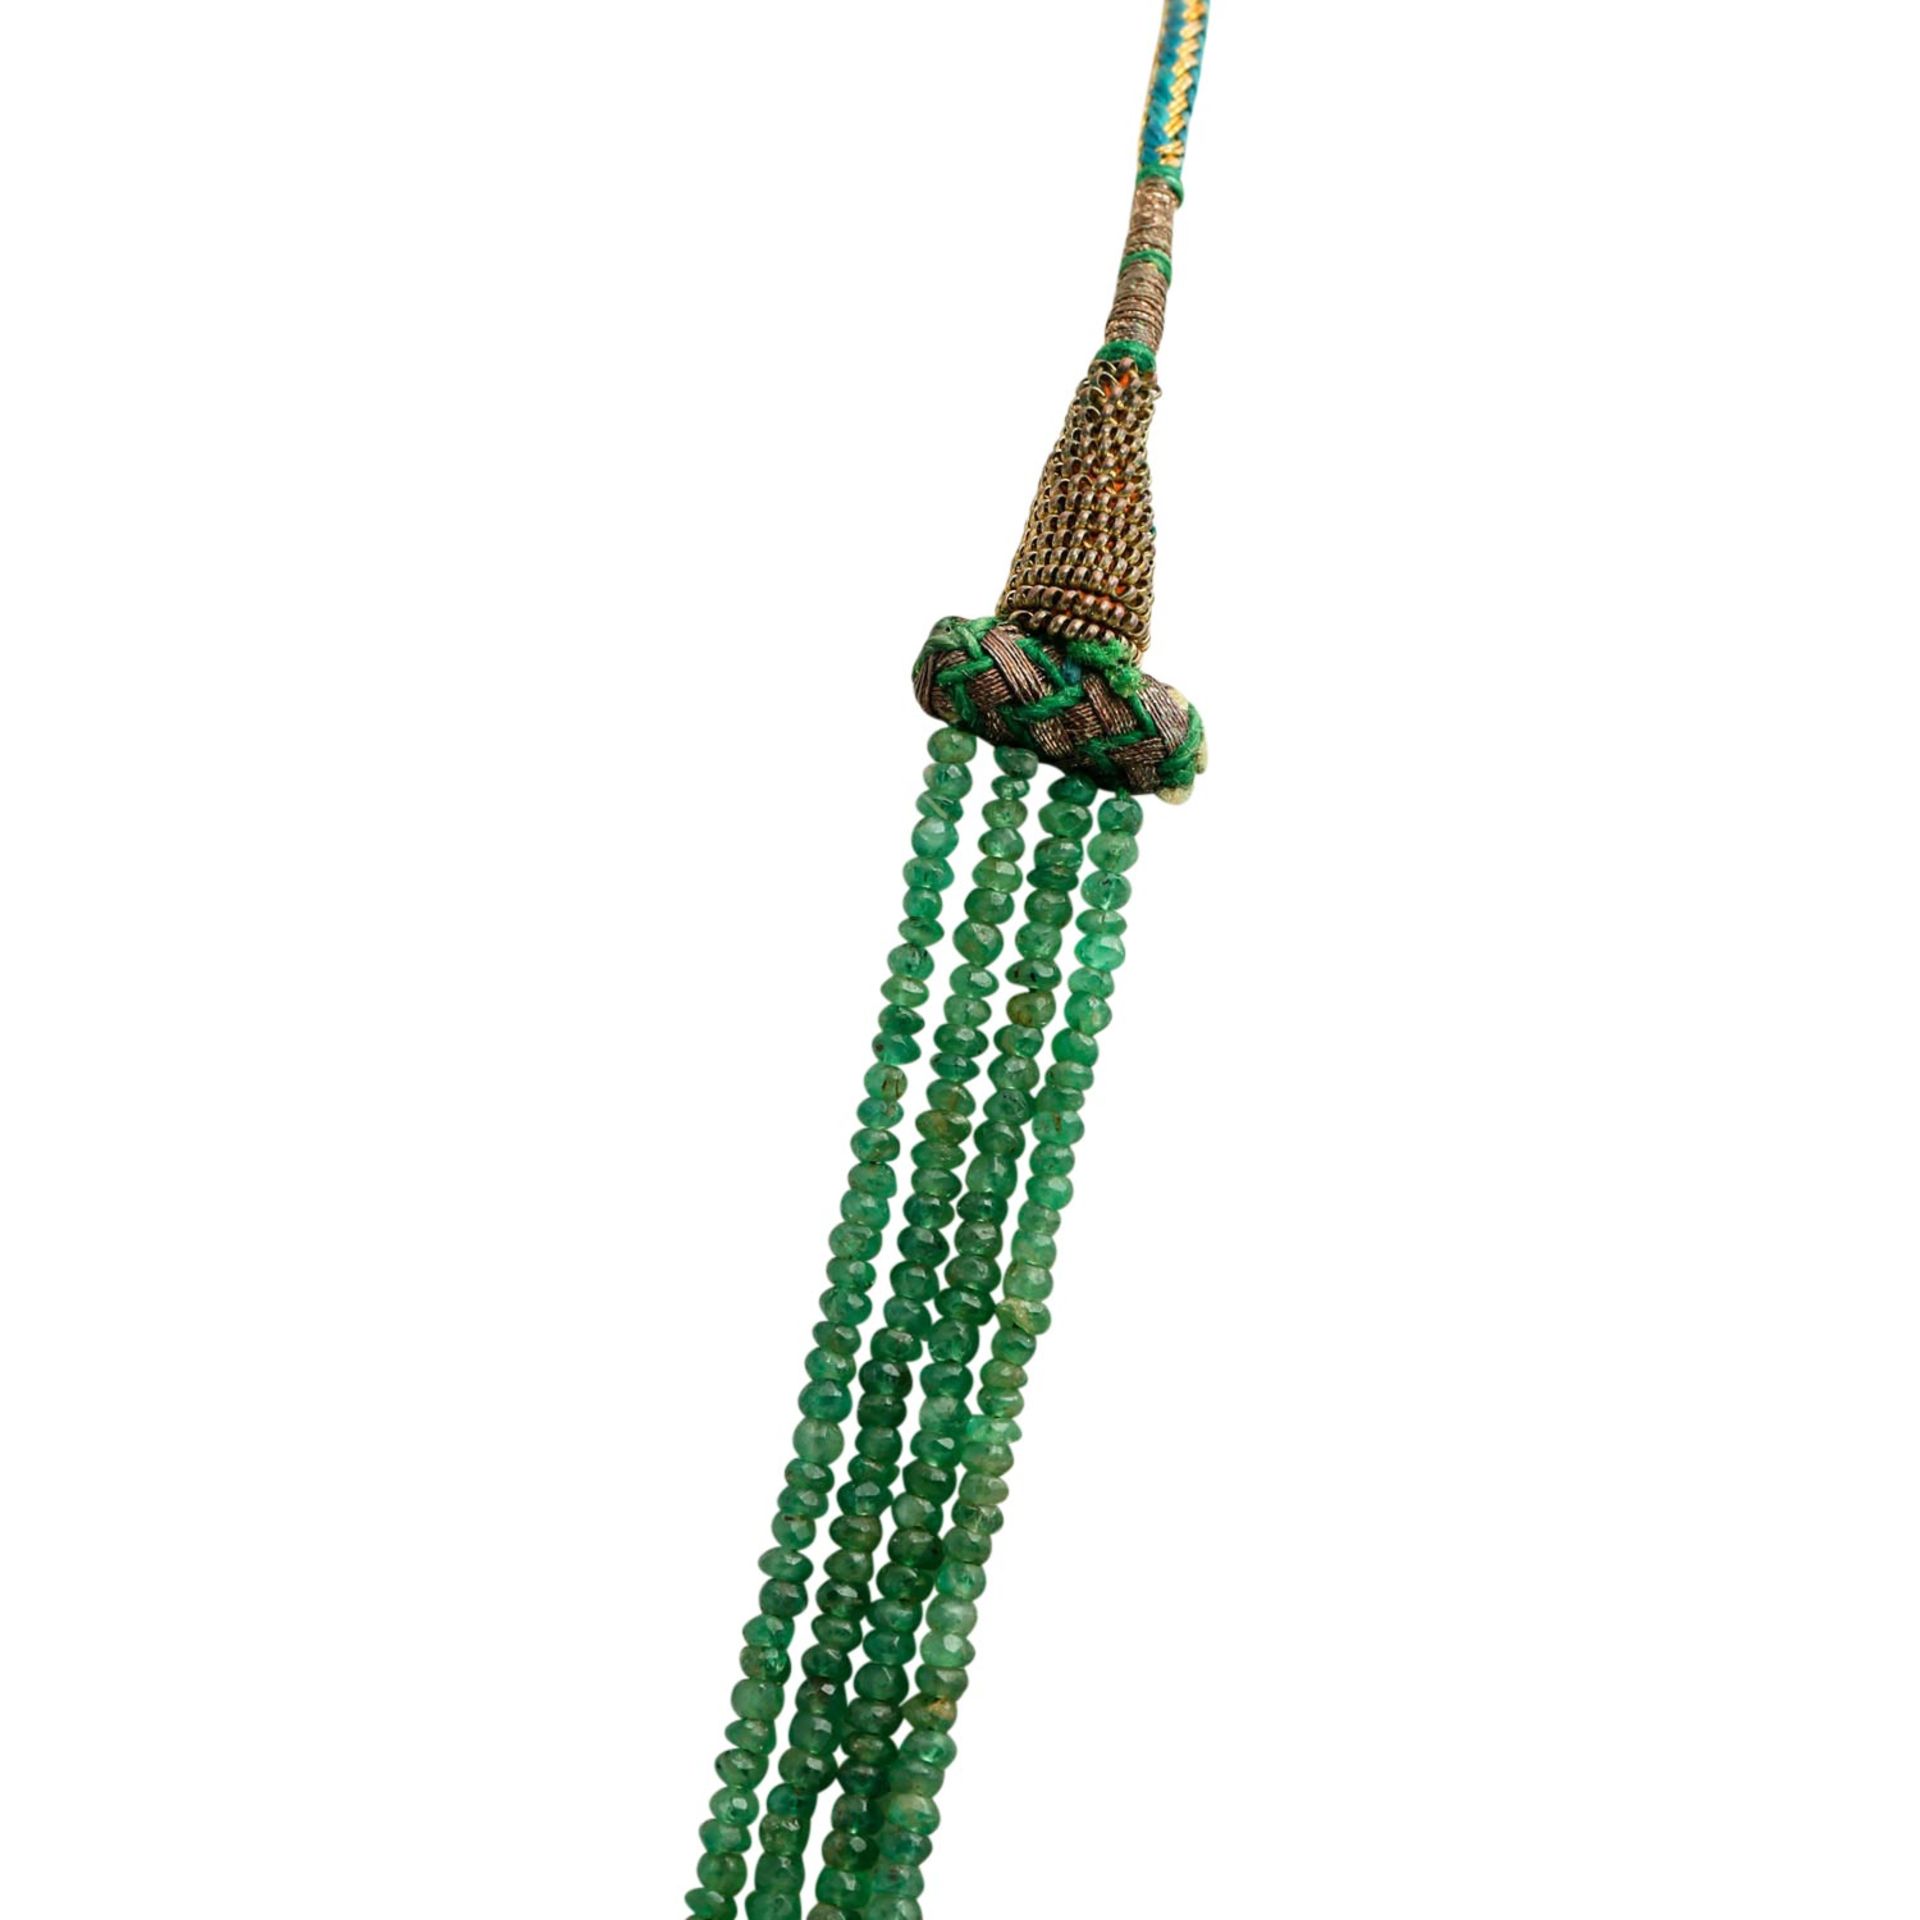 Smaragdkette 4-reihig, facettierte Linsen ca. 2,5-5 mm im Verlauf, tansparent bis tran - Bild 3 aus 4